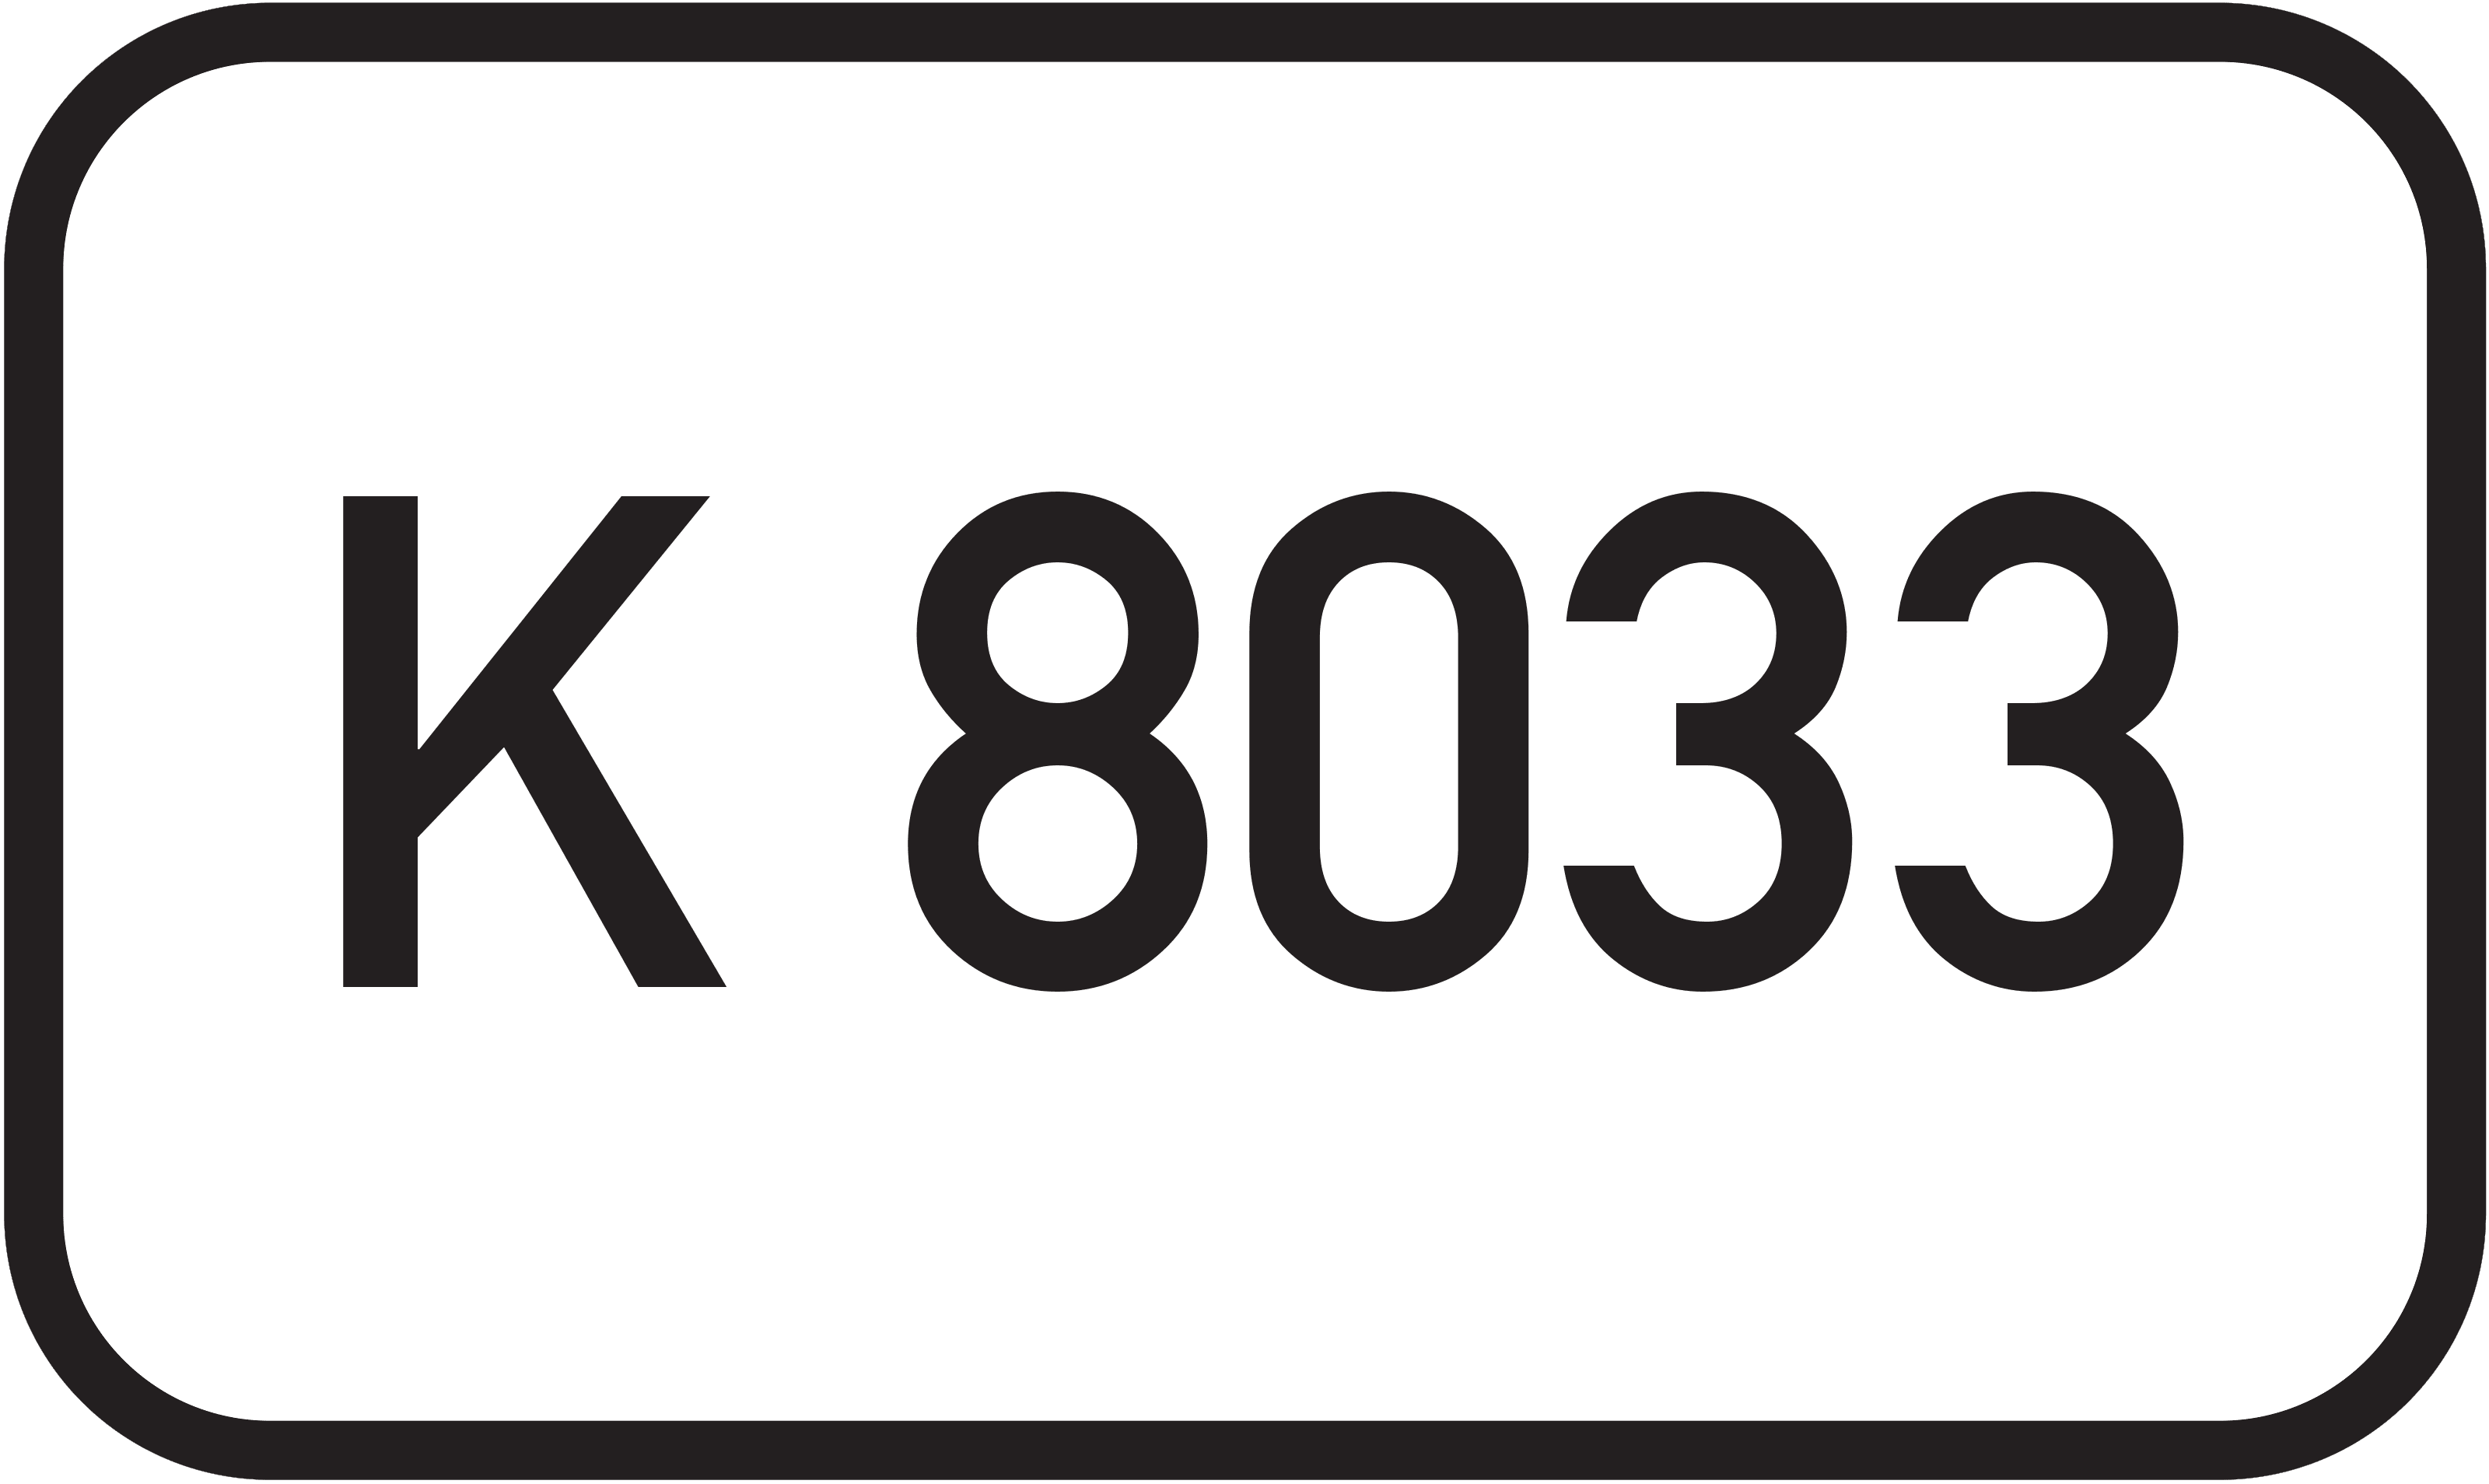 Kreisstraße K 8033